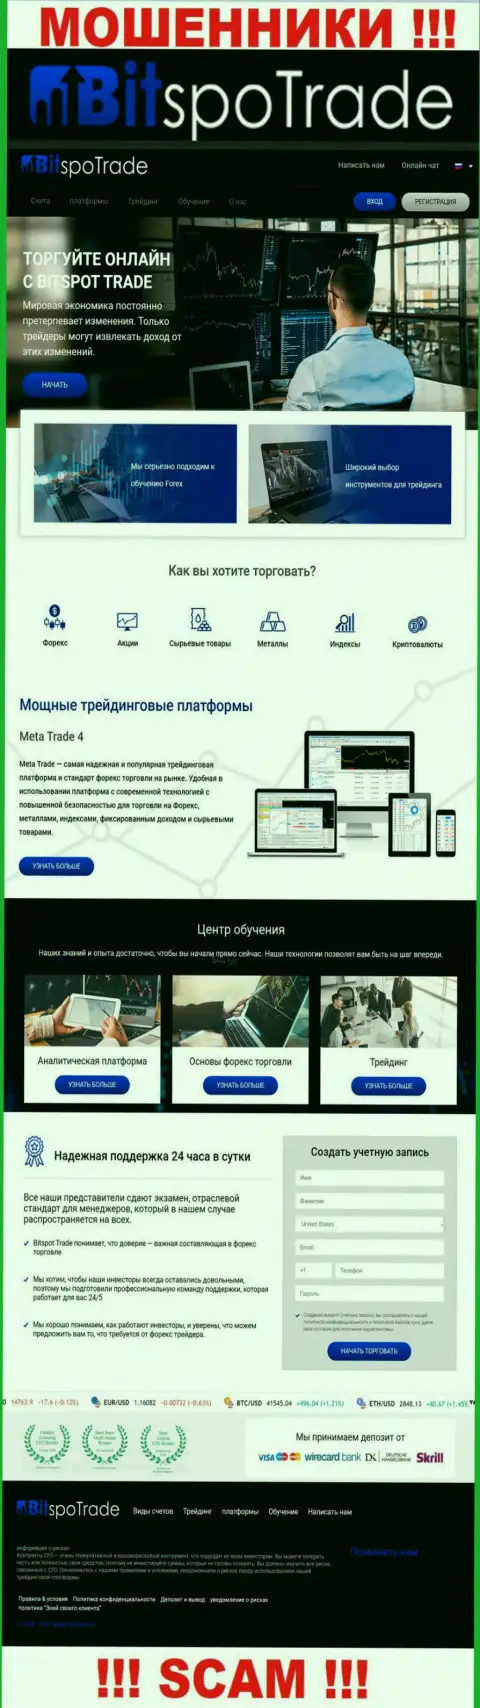 Официальный портал интернет-мошенников и шулеров компании BitSpoTrade Com